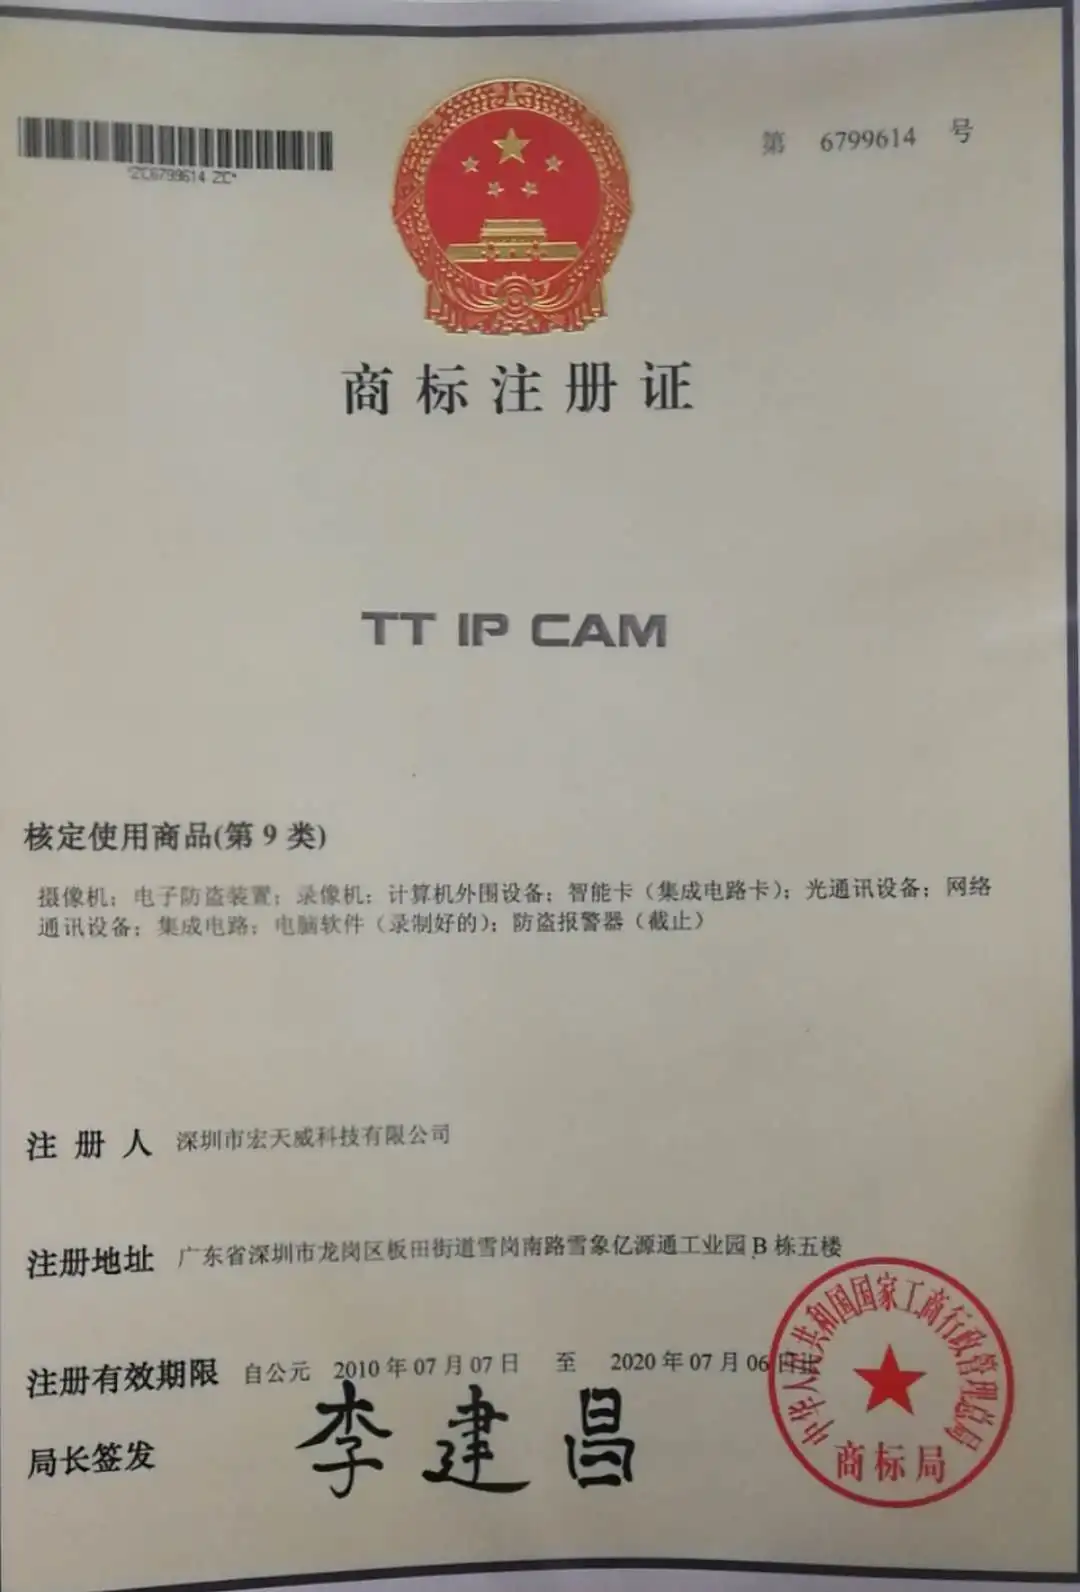 TT IP CAM